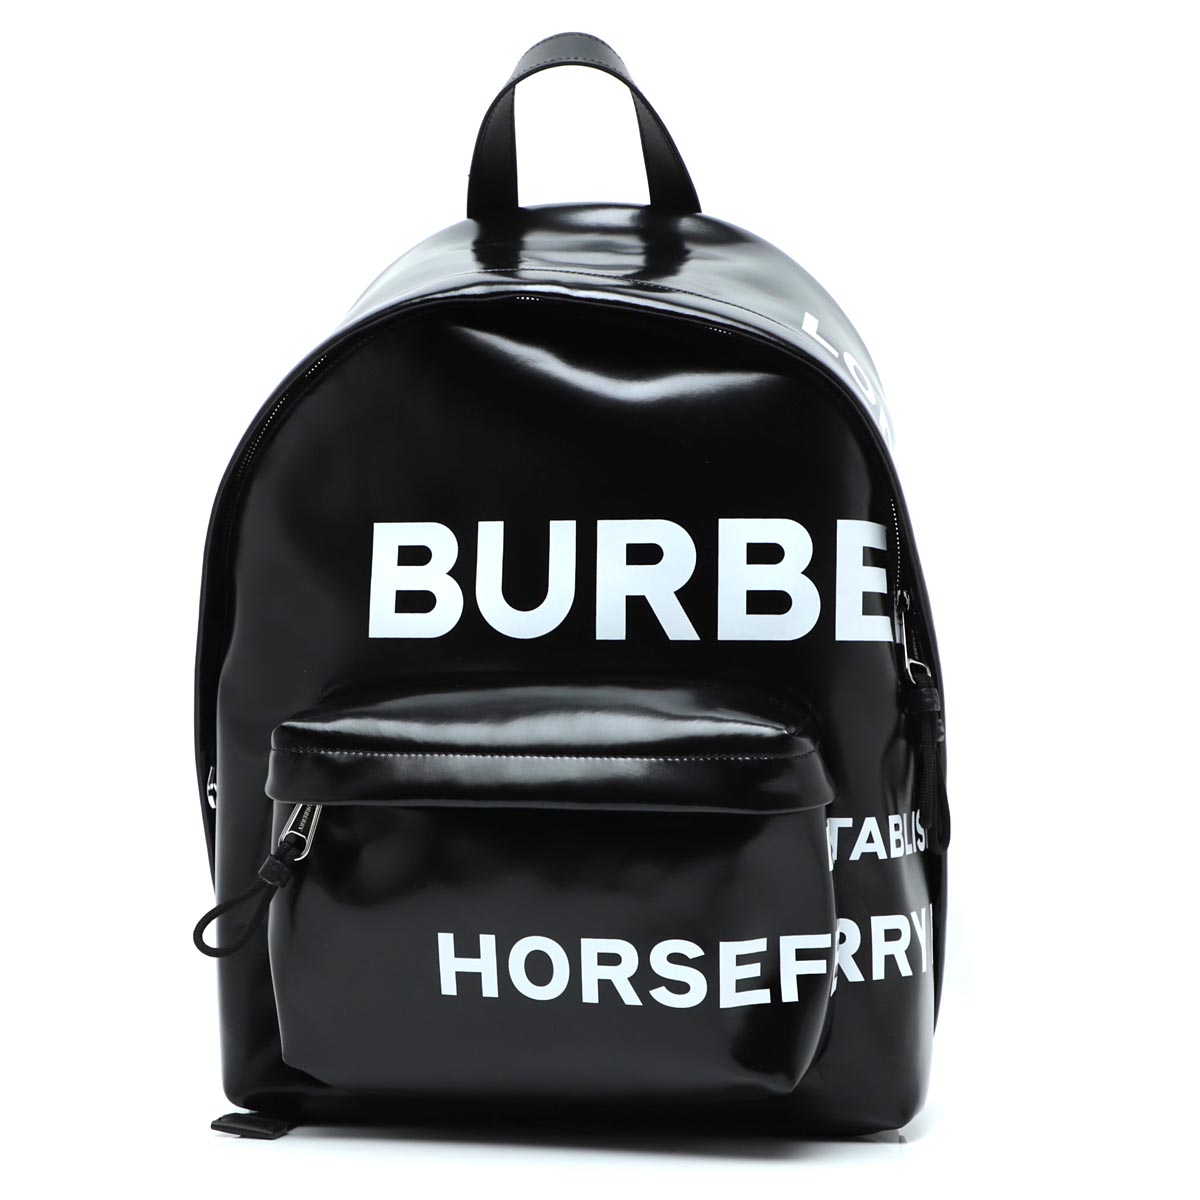 バーバリー BURBERRY バックパック リュックサック ブラック メンズ 8021908 black HORSE FERRY PRINT  COATED CANVAS BACKPACK【返品送料無料】【ラッピング無料】 | モダンブルー楽天市場店